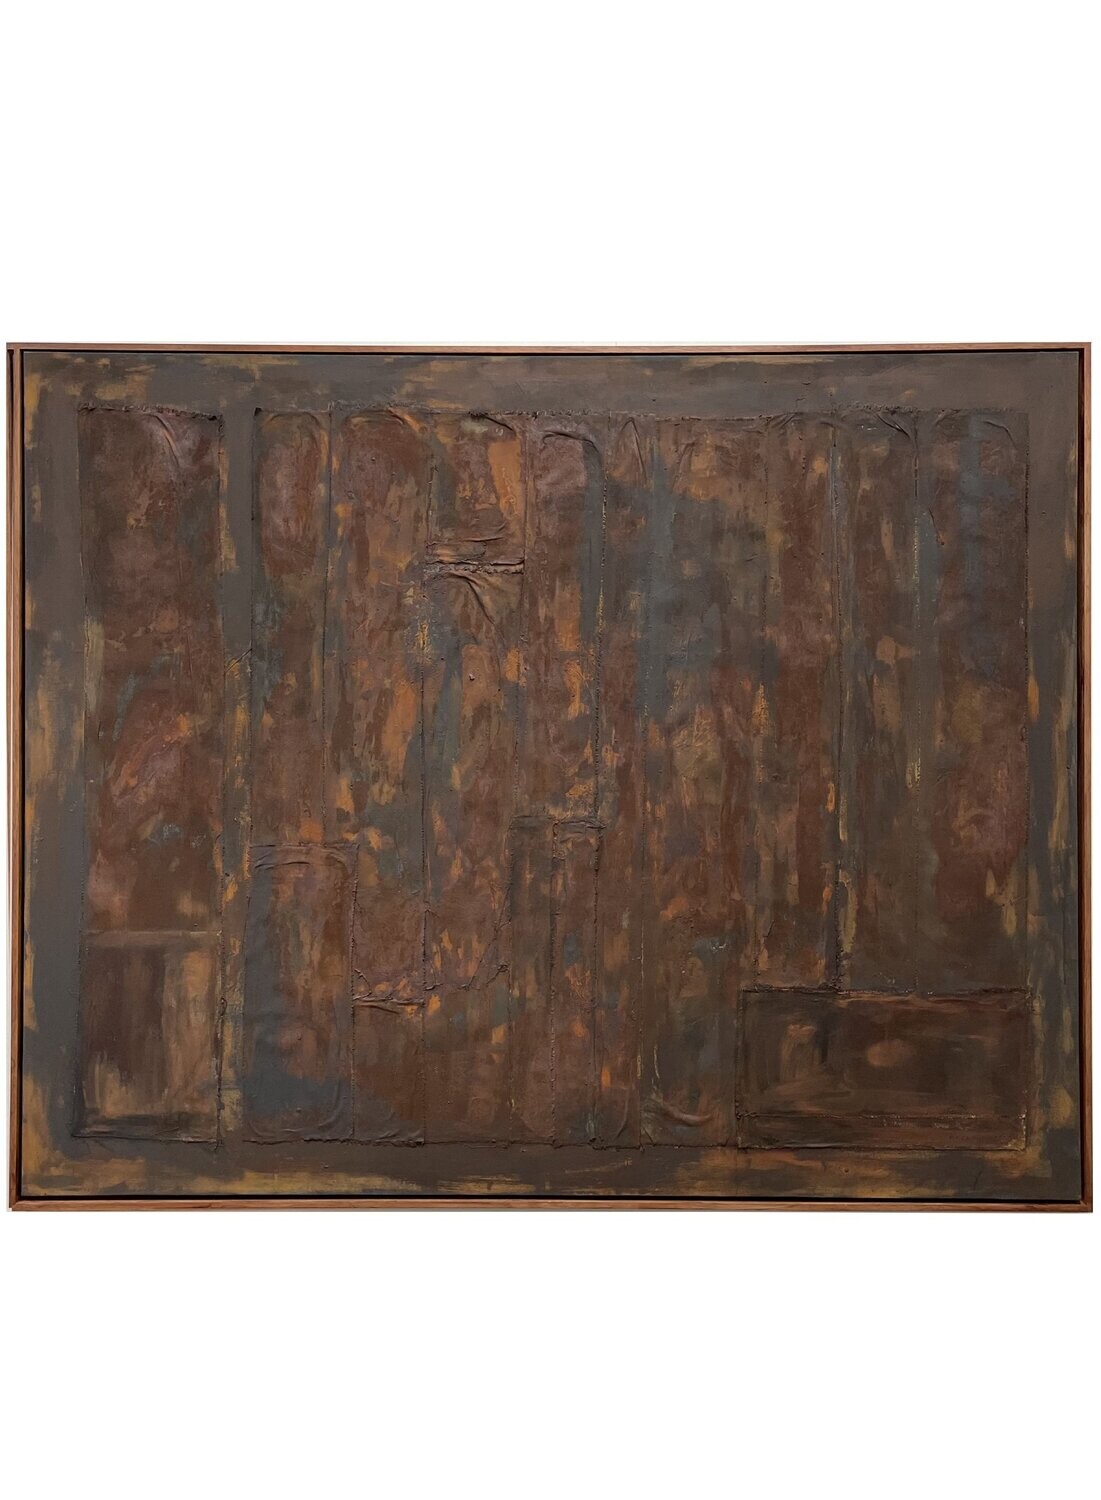 № 57 • Rusted Canvas • 2021 •
150x120 cm Acryl/Canvas on Canvas